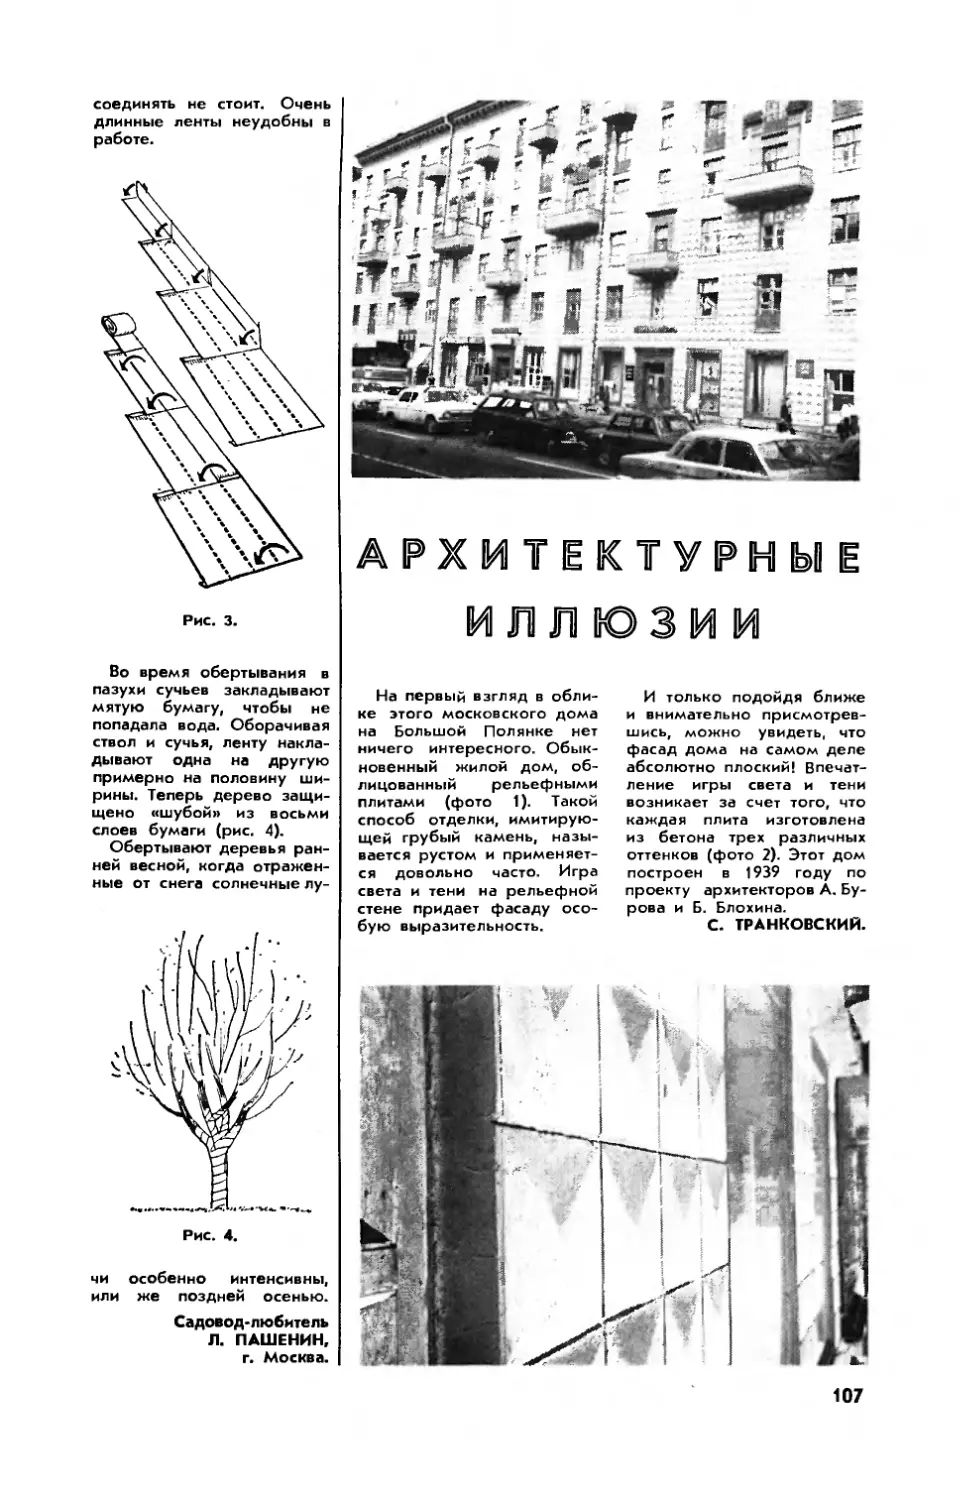 С. ТРАНКОВСКИЙ — Архитектурные иллюзии